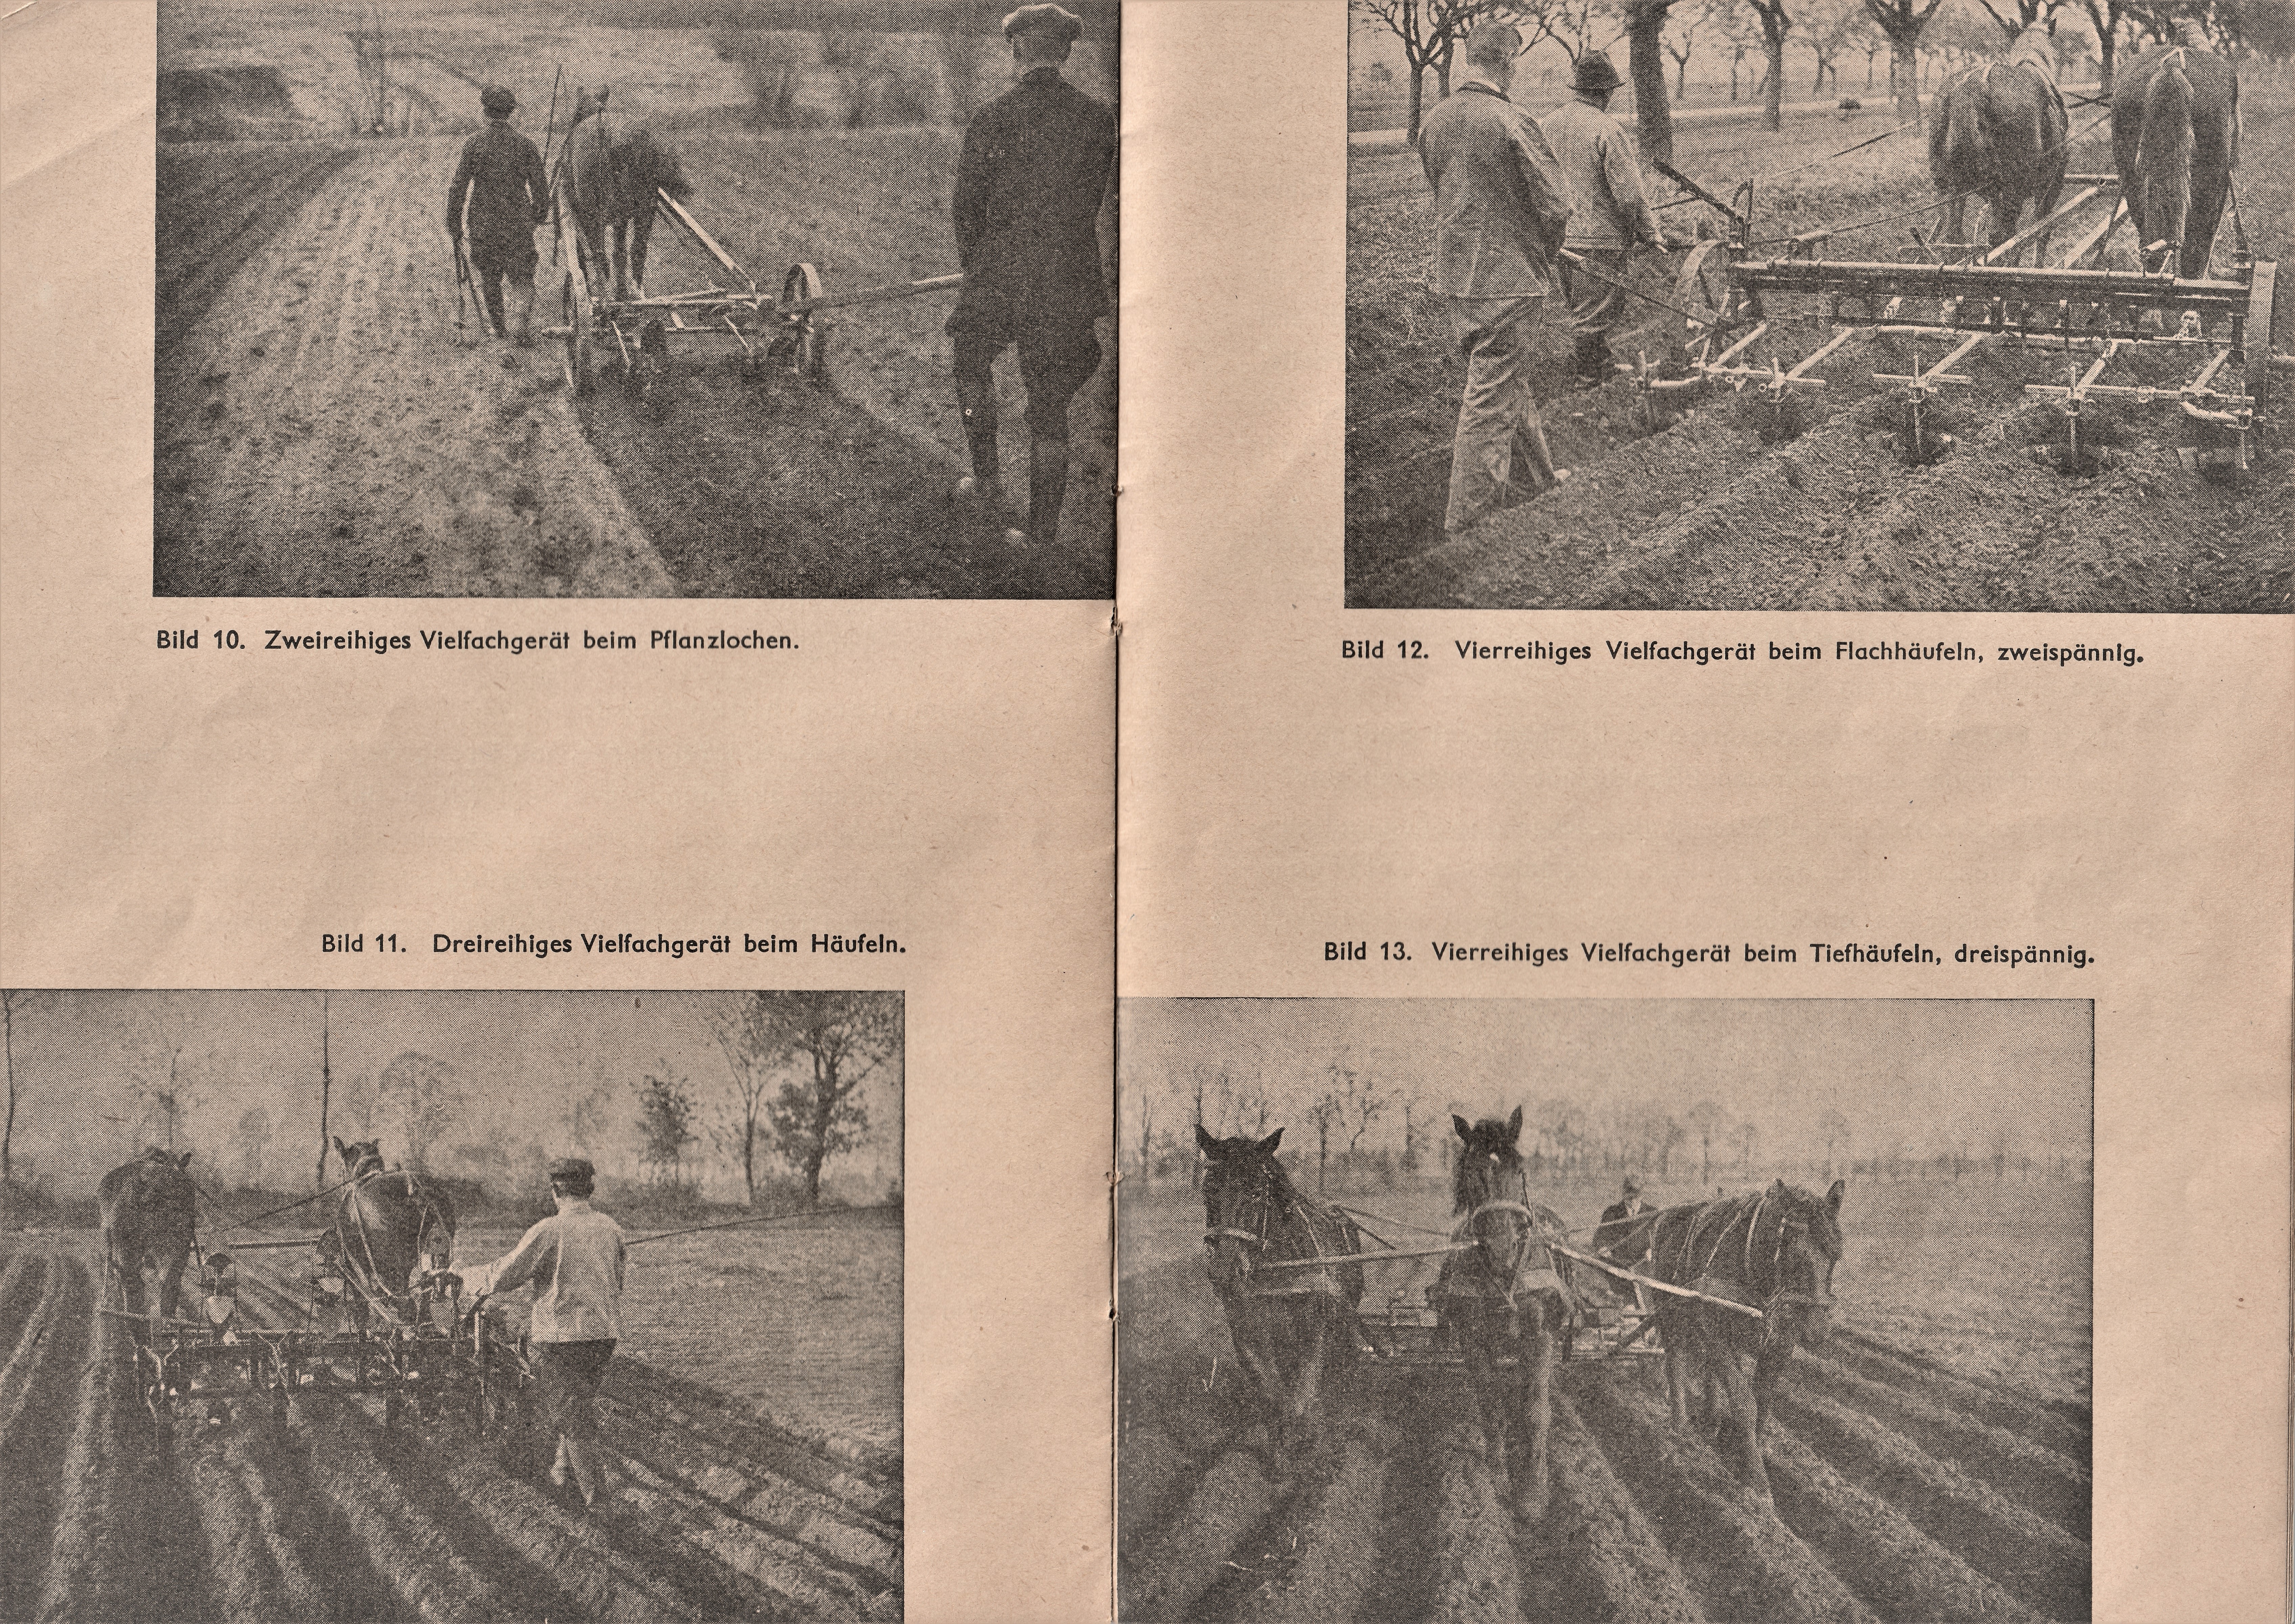 Pflanzlochen und Häufeln Anfang der 30iger Jahre